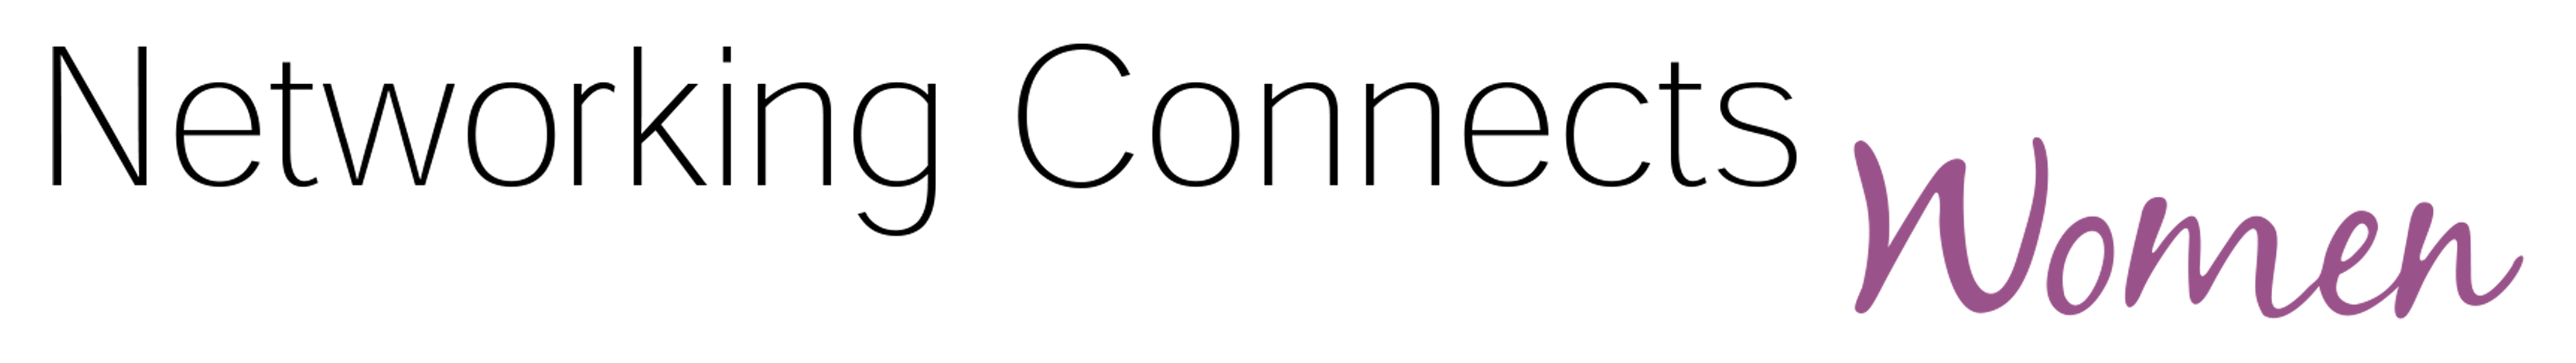 NCW_logo